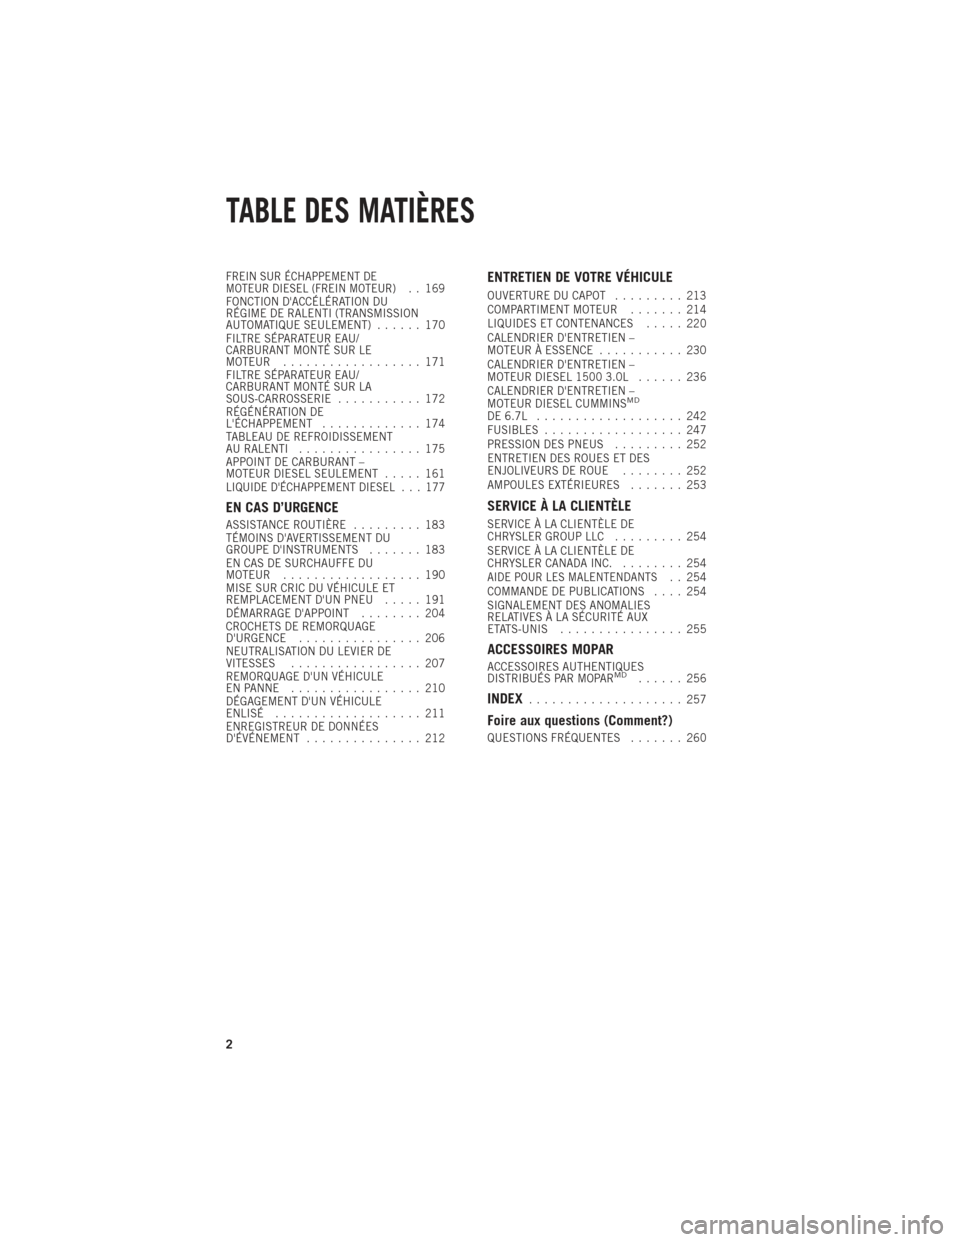 Ram 1500 2014  Guide dutilisateur (in French) FREIN SUR ÉCHAPPEMENT DE
MOTEUR DIESEL (FREIN MOTEUR). . 169
FONCTION DACCÉLÉRATION DU
RÉGIME DE RALENTI (TRANSMISSION
AUTOMATIQUE SEULEMENT) ...... 170
FILTRE SÉPARATEUR EAU/
CARBURANT MONTÉ S